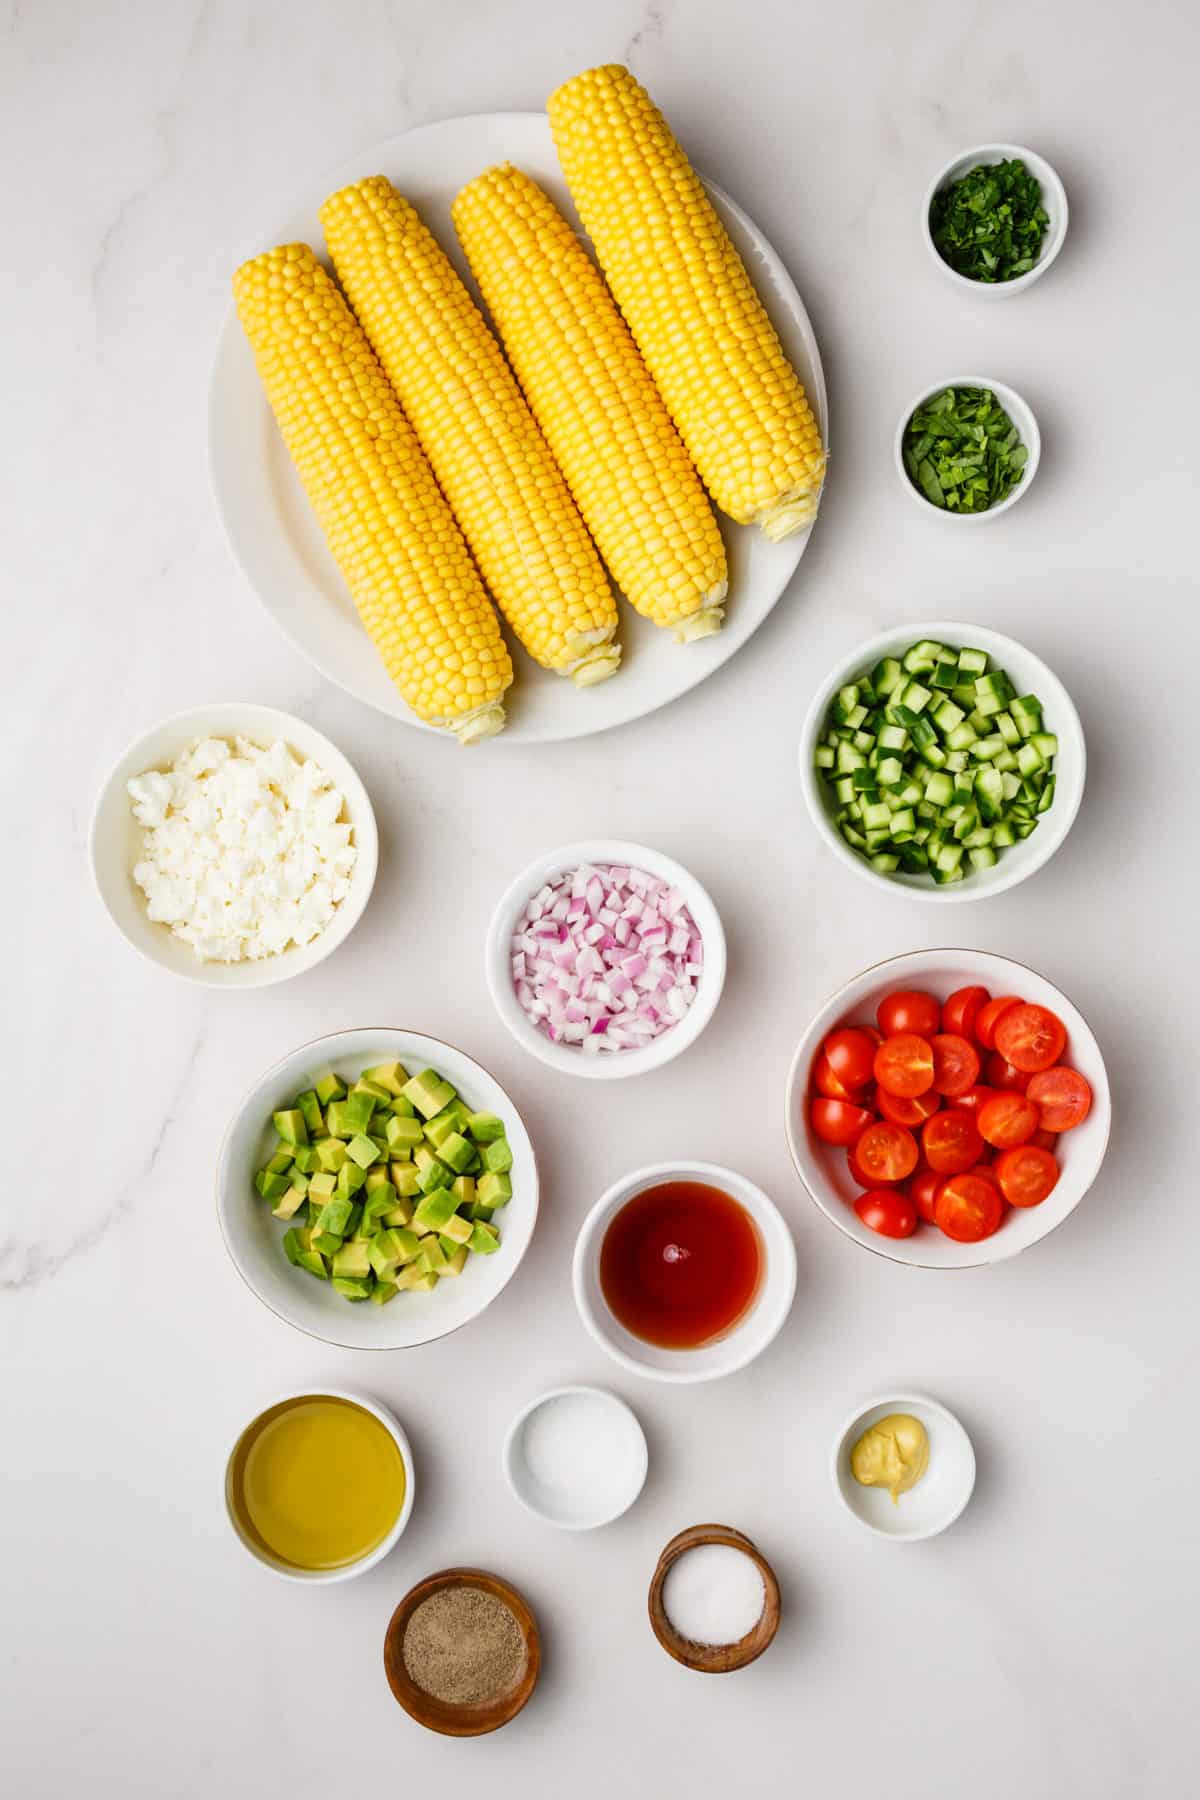 ingredients to make corn salad